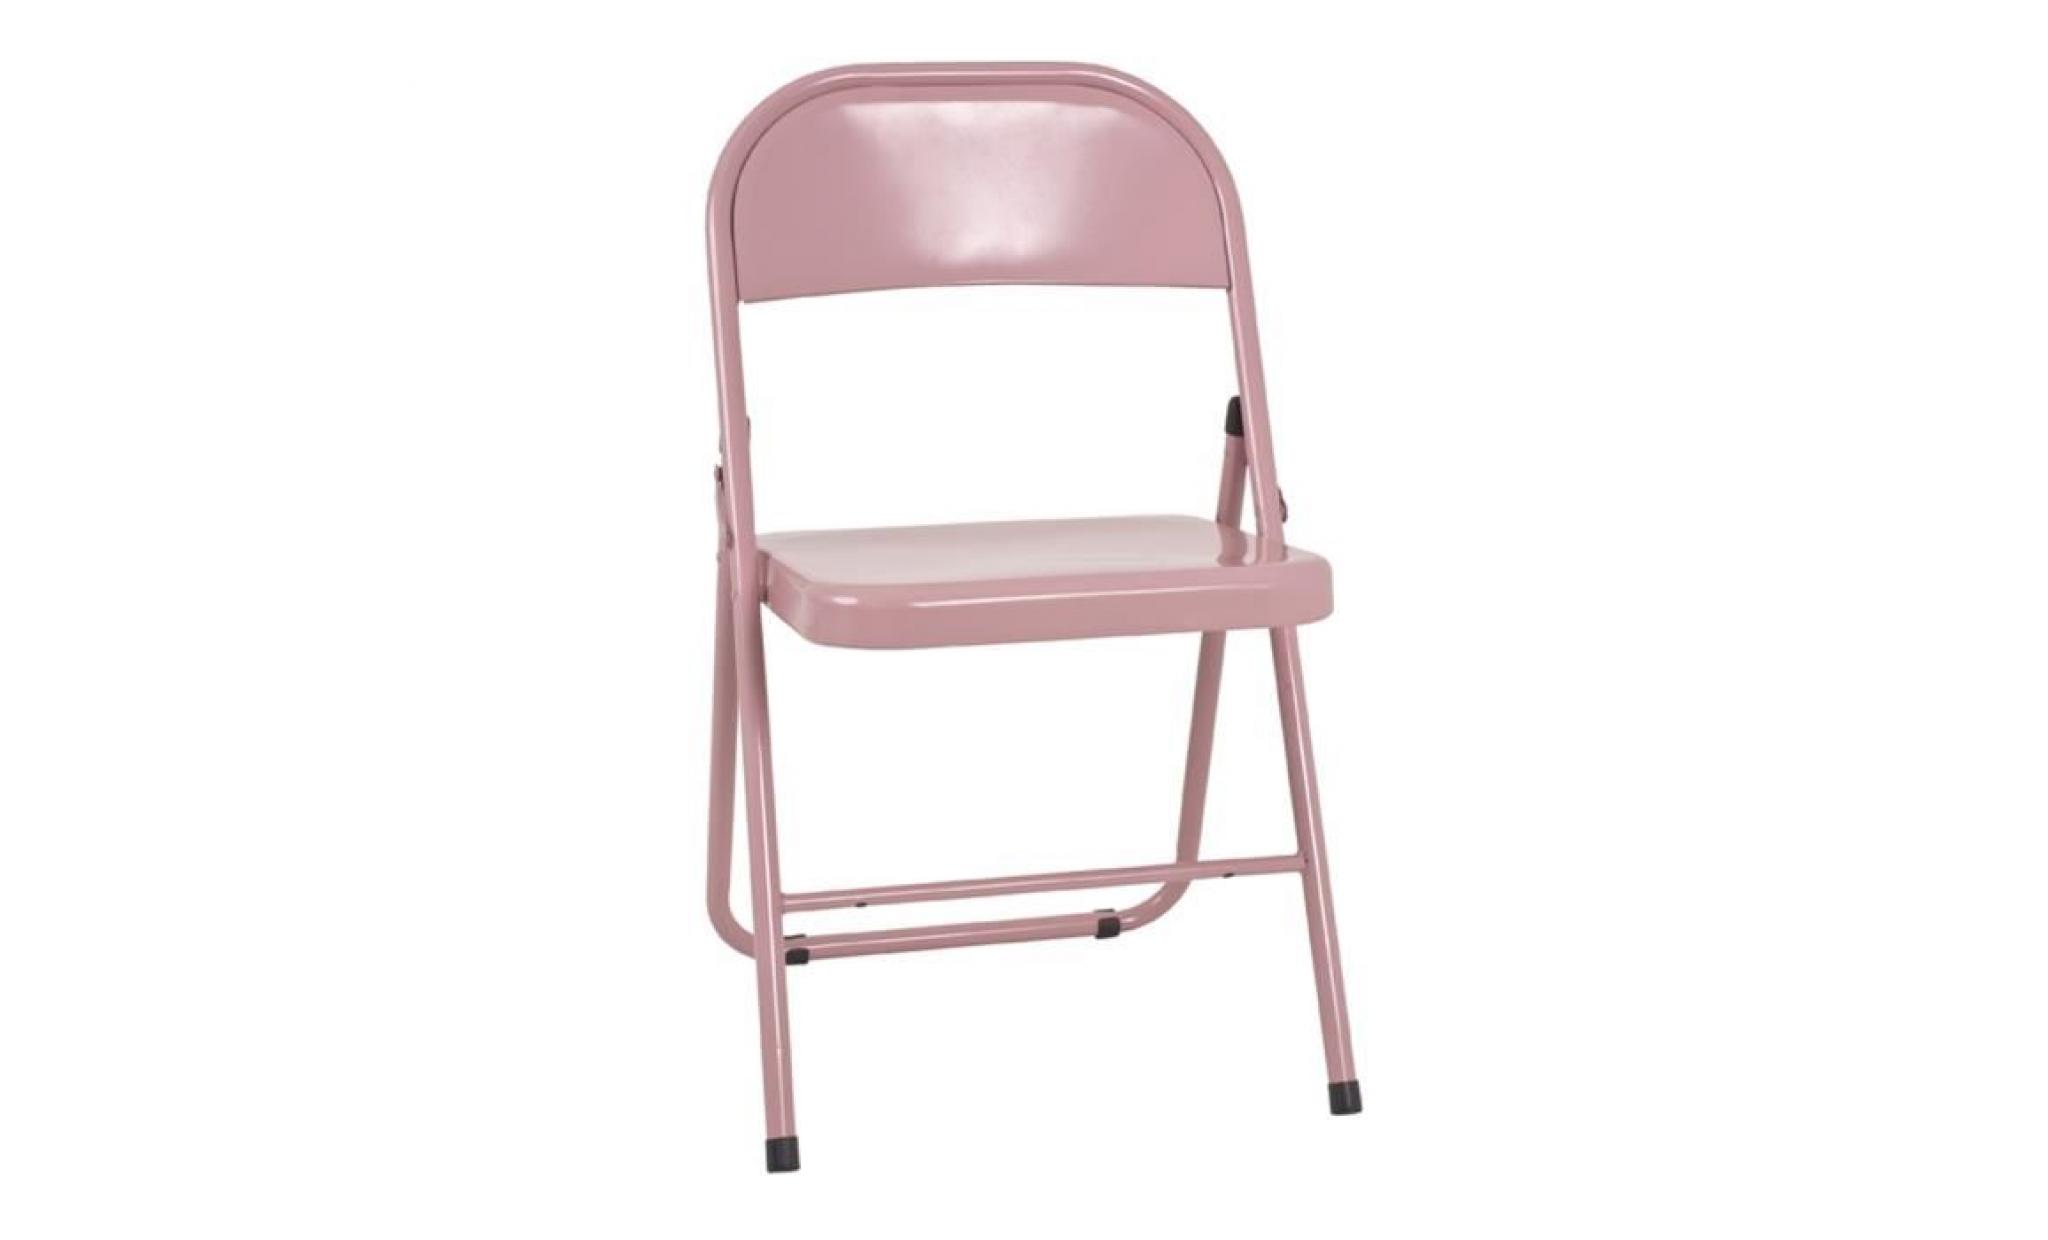 Chaise pliante en métal rose, L47 x H78 x P46 cm